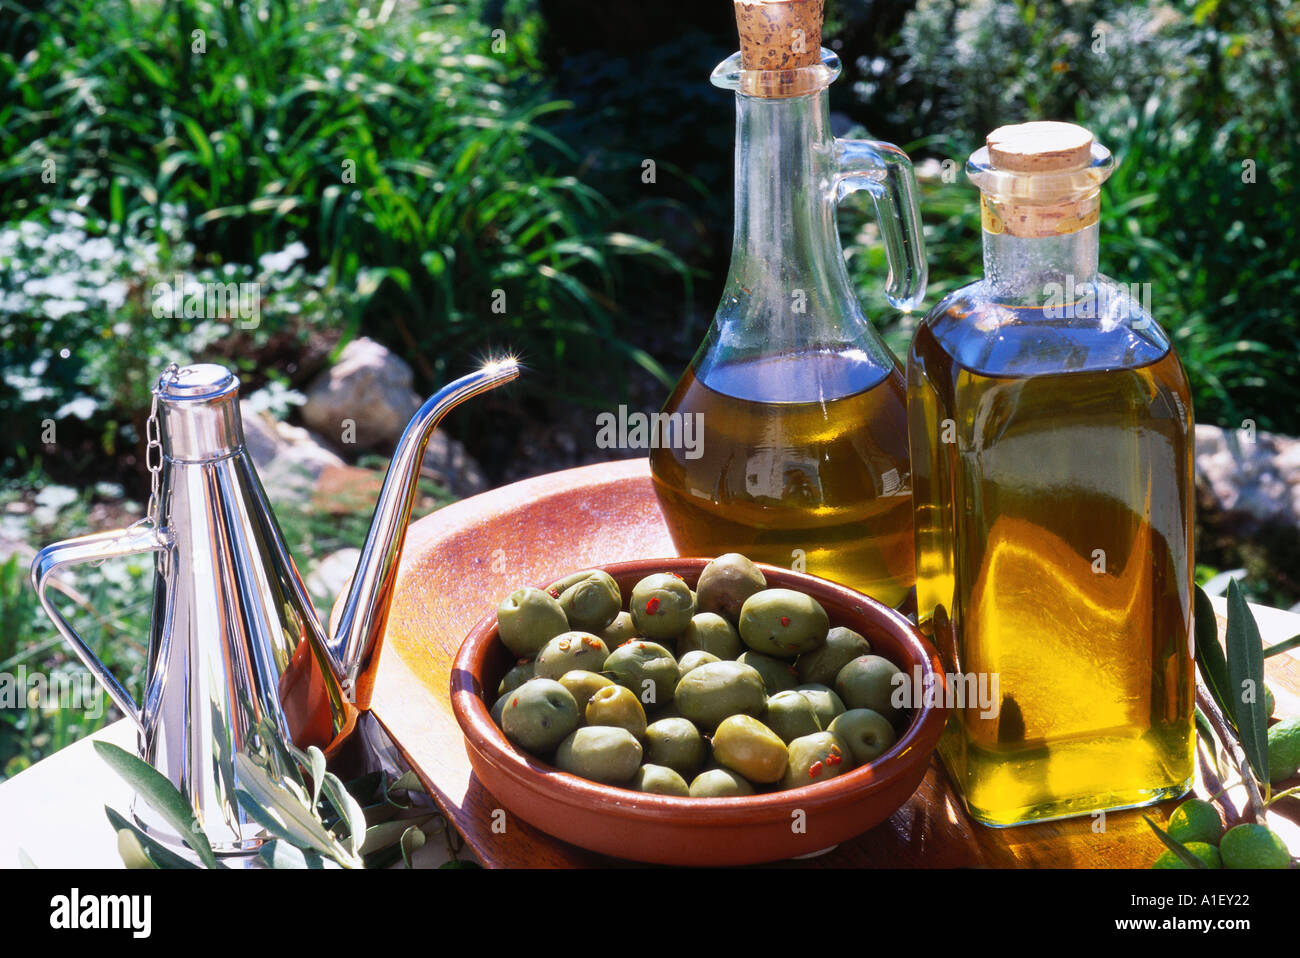 Оливковое масло имеет